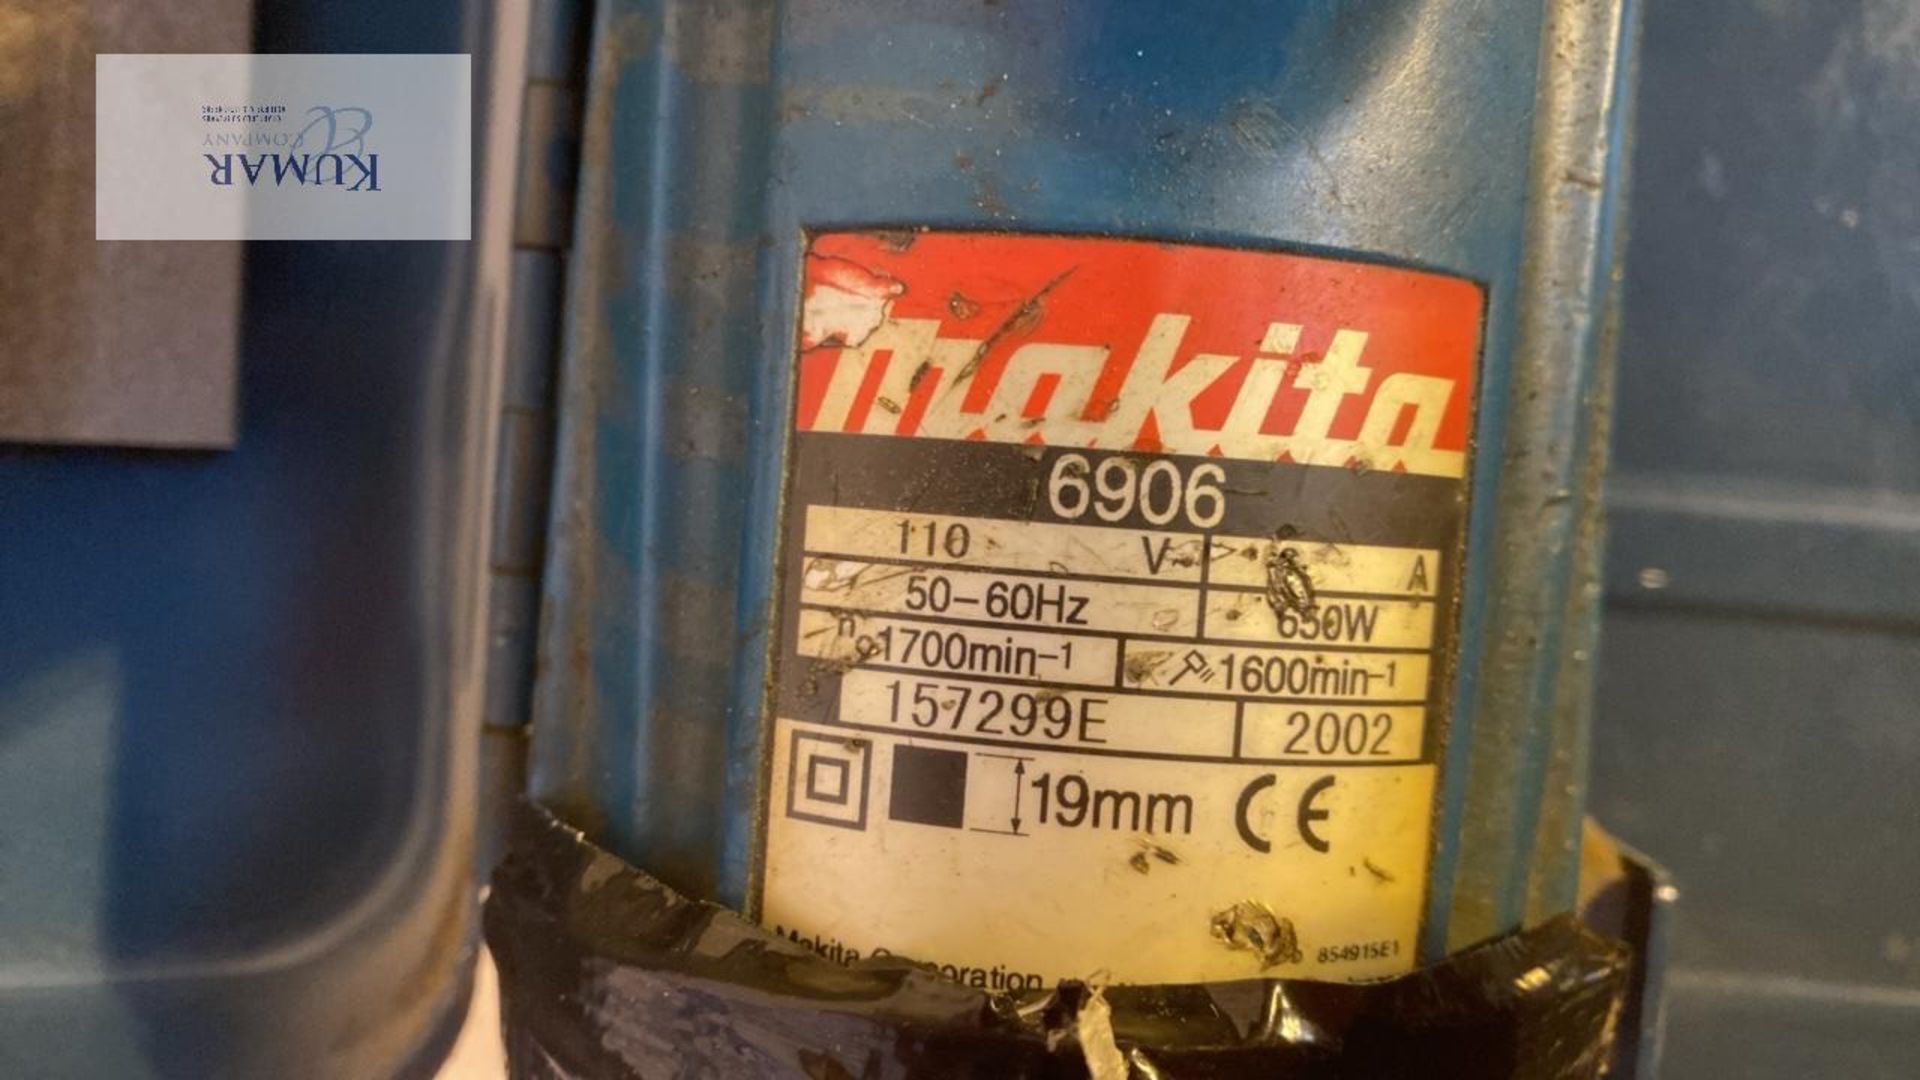 Makita 6906 19mm 110 Volt Impact Gun - Image 3 of 4